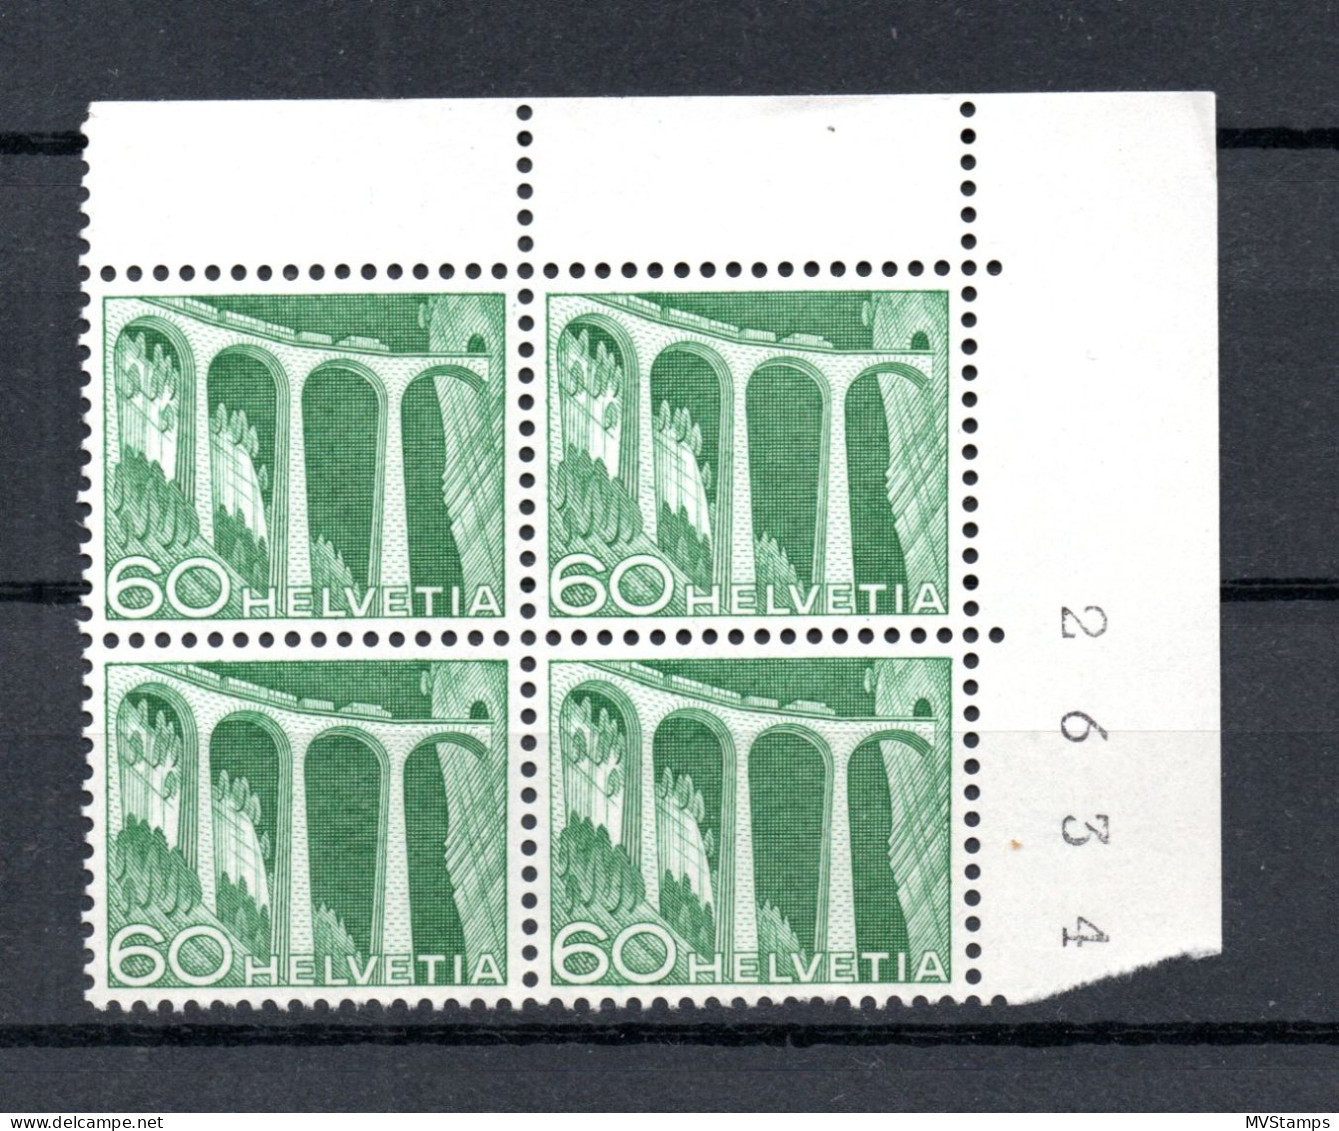 Schweiz 1949 Freimarke 539 In UER Viererblocke Postfrisch - Ungebraucht